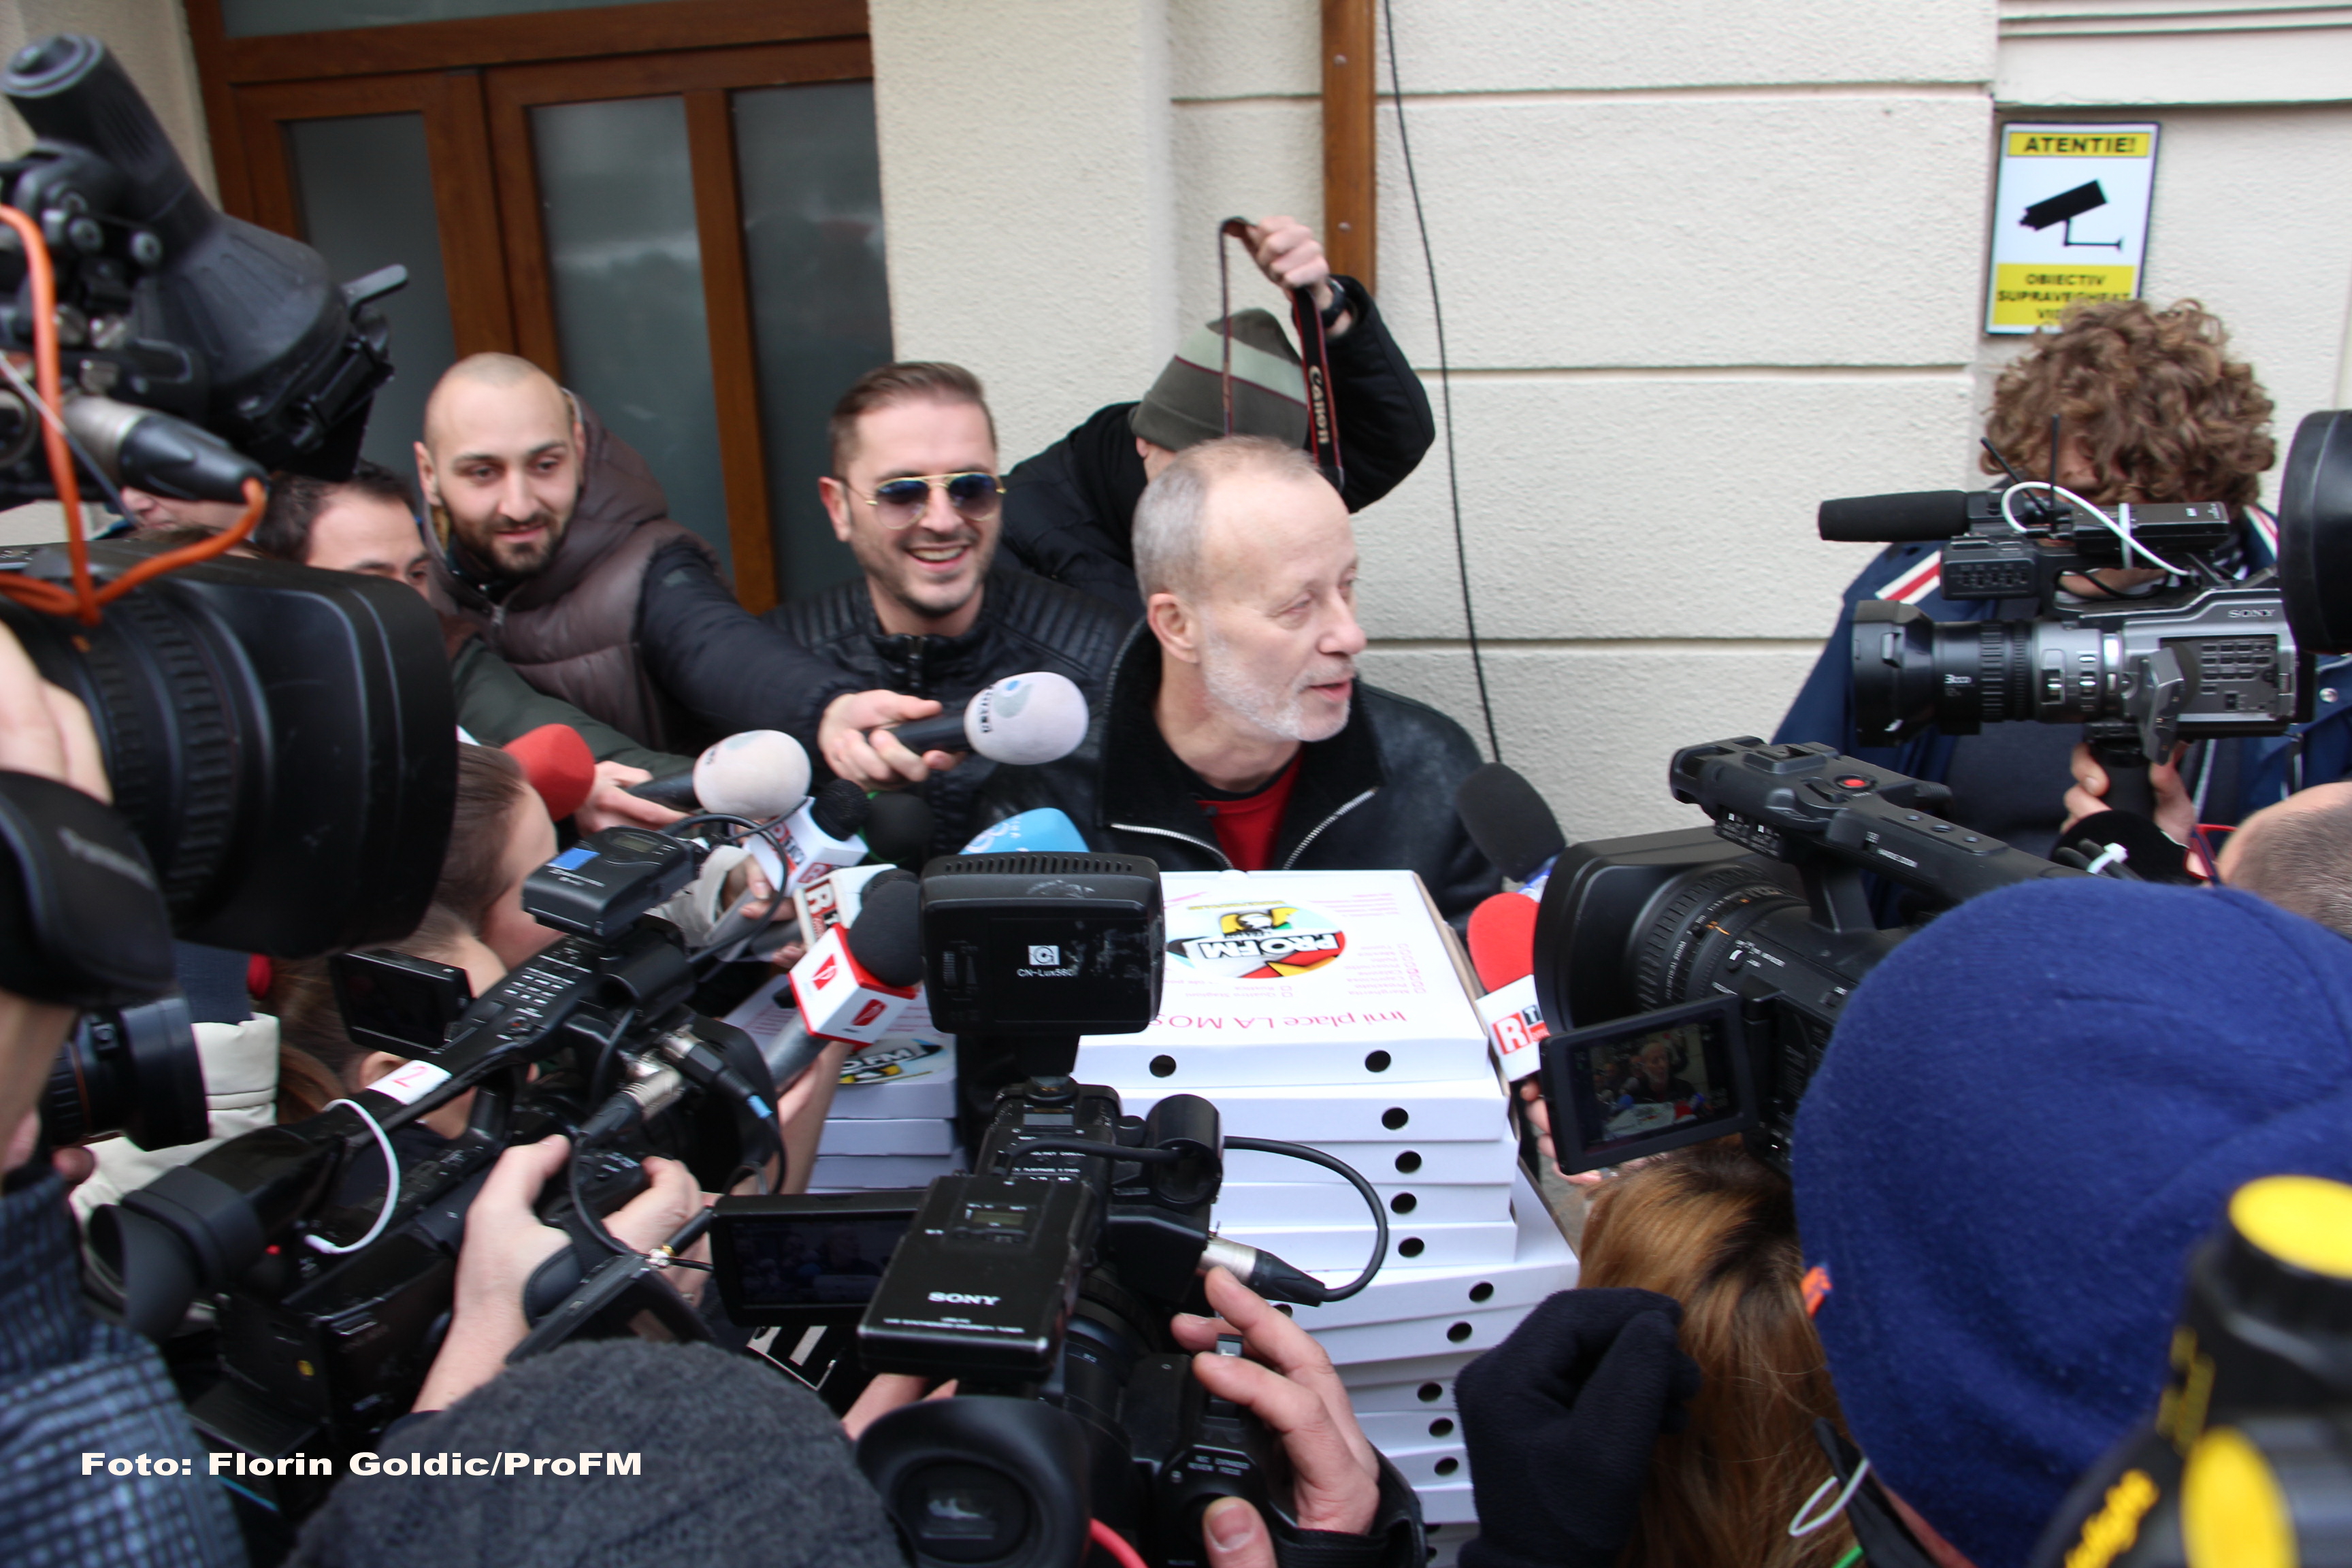 Moment inedit cu Andrei Gheorghe: în 2015, jurnalistul le-a adus pizza procurorilor DNA - Imaginea 6